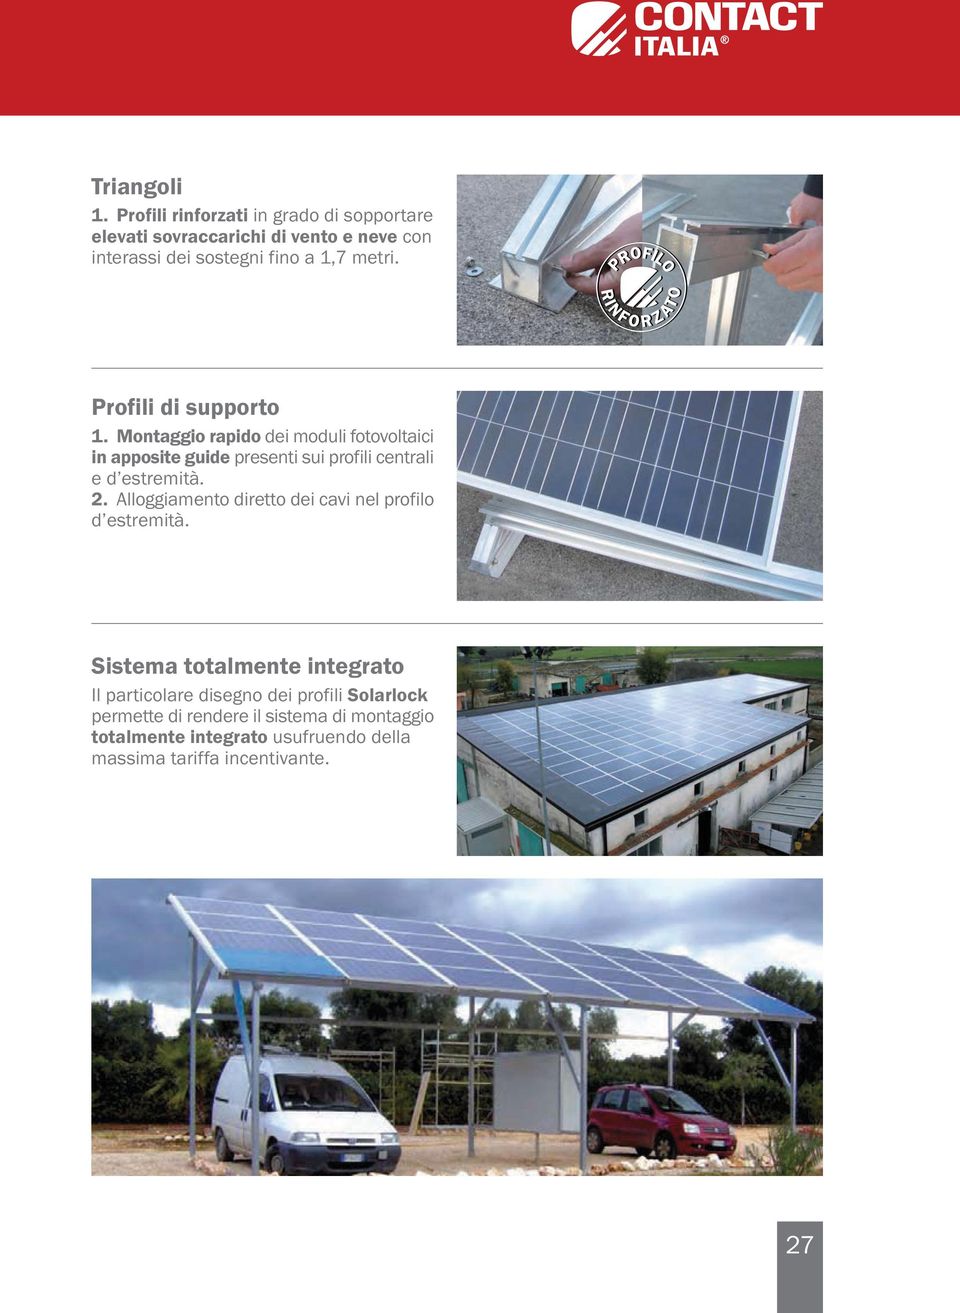 Profili di supporto. Montaggio rapido dei moduli fotovoltaici in apposite guide presenti sui profili centrali e d estremità. 2.